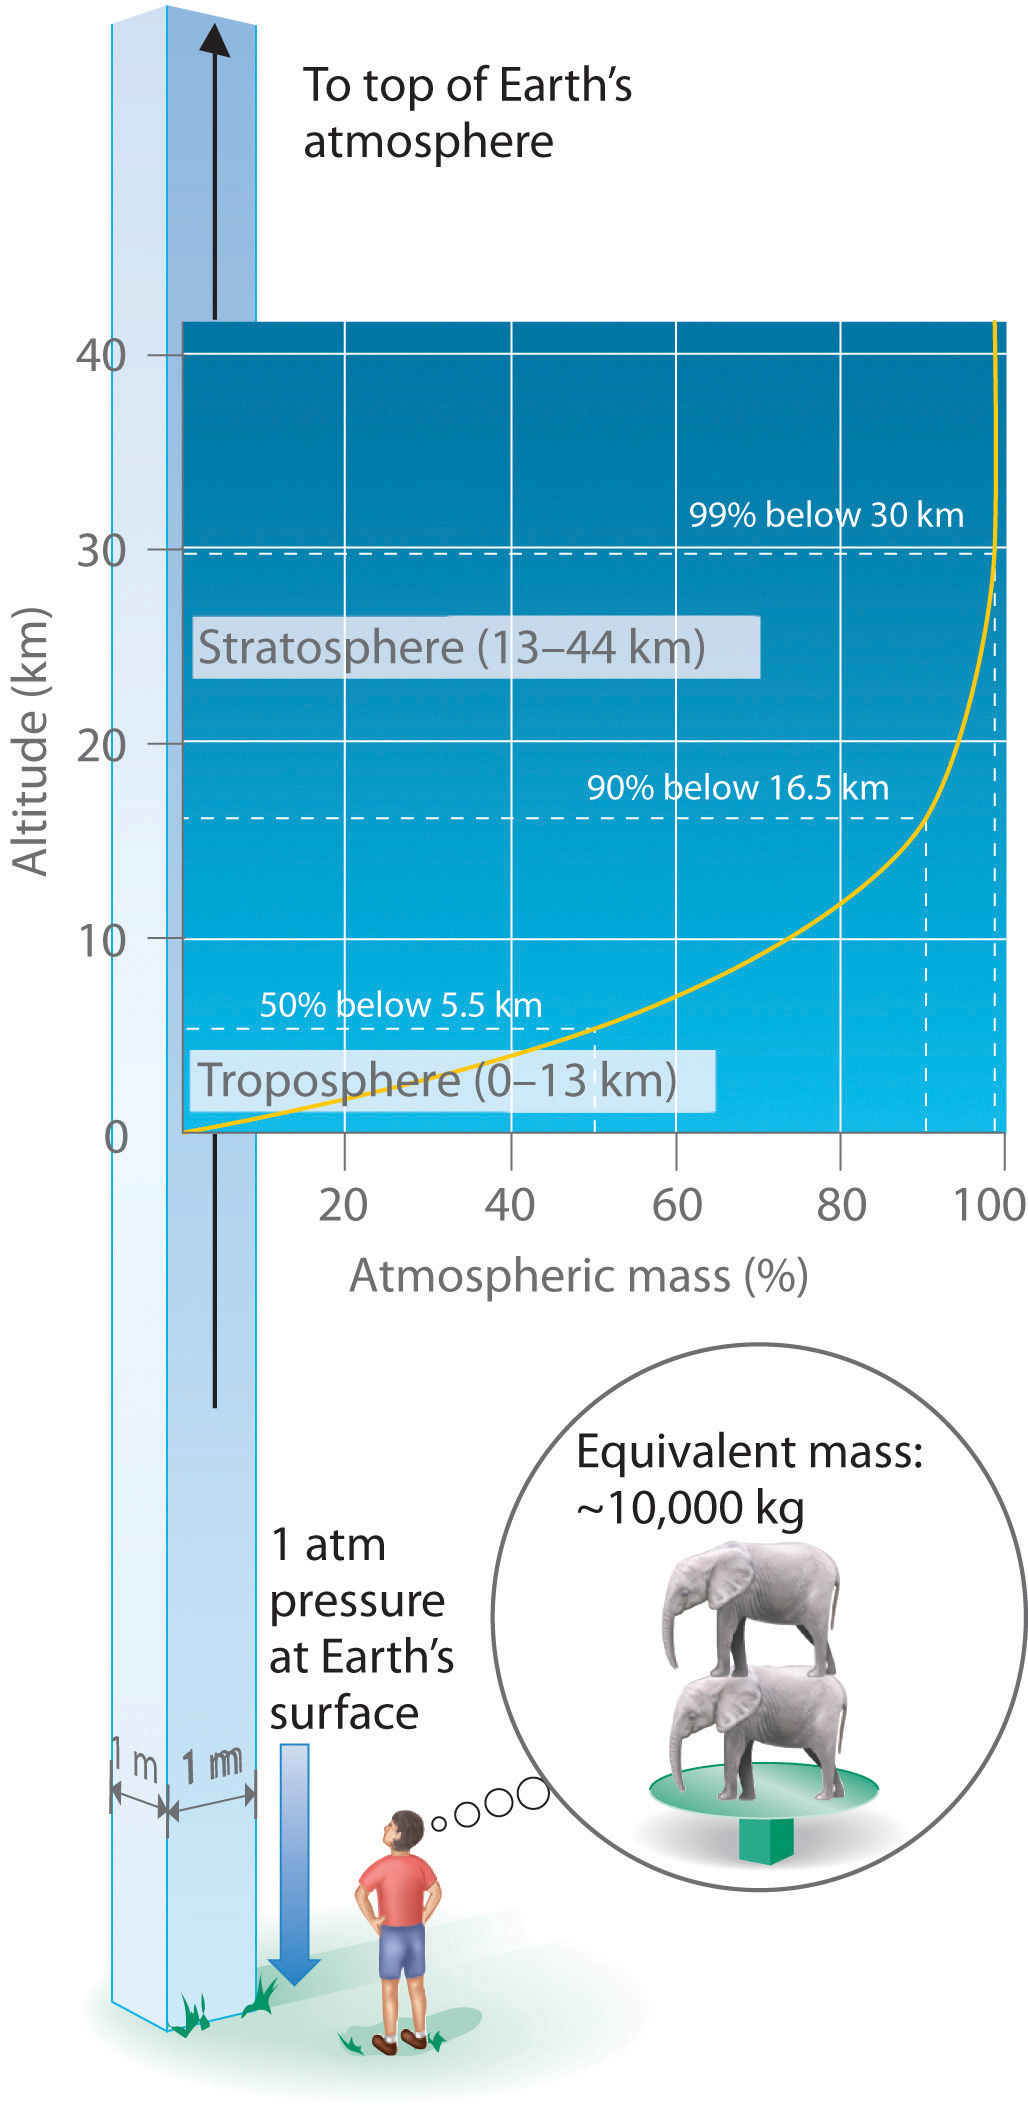 La presión de 1 atm en la superficie de la Tierra equivale a la masa equivalente de 10,000 kg o dos elefantes